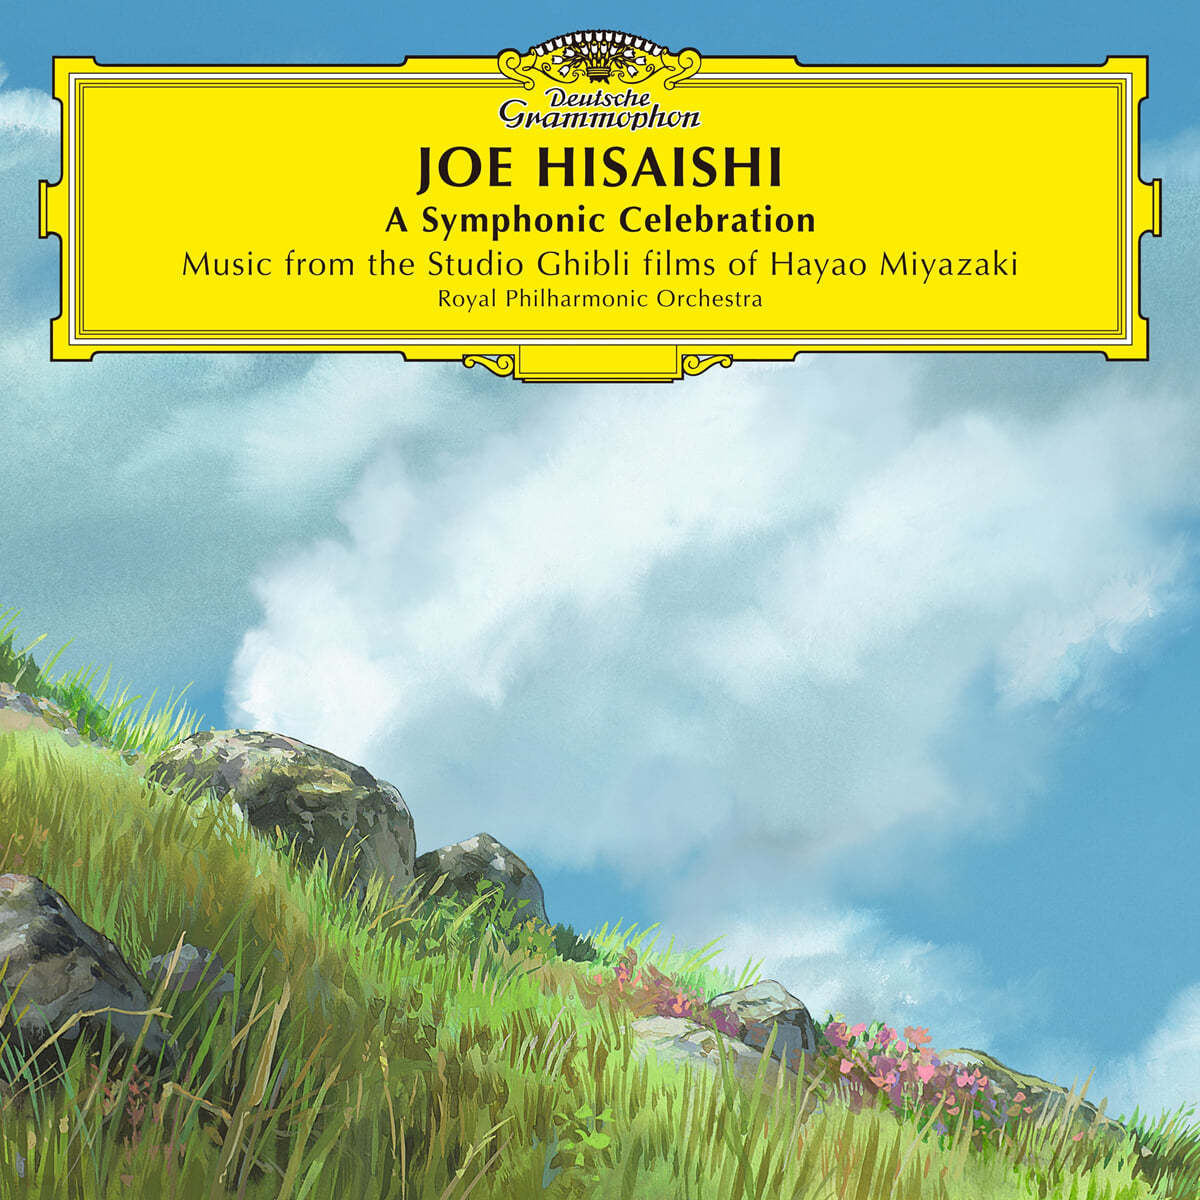 히사이시 조: 지브리 OST 편곡집 (Hisaishi Joe: Symphonic Celebration) [2CD]